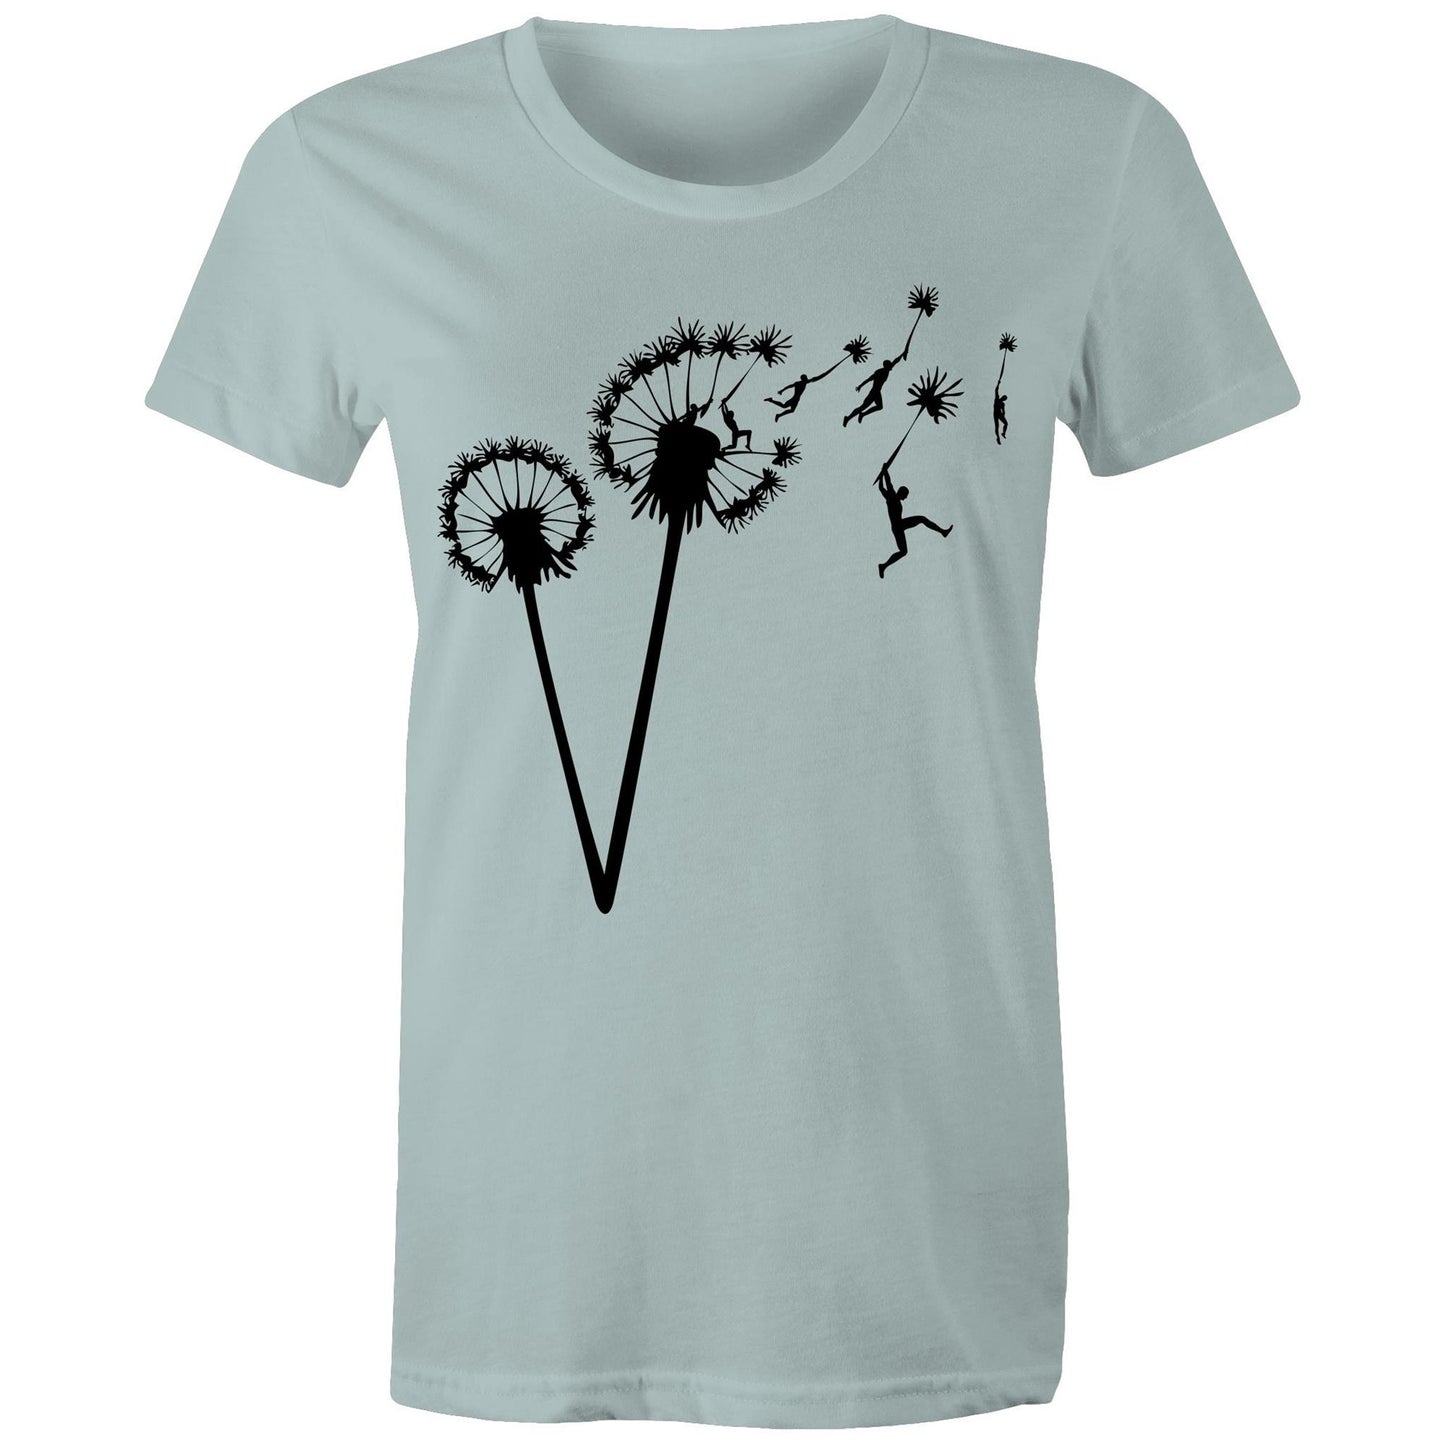 Dandelion People Flight - Women's T-Shirt